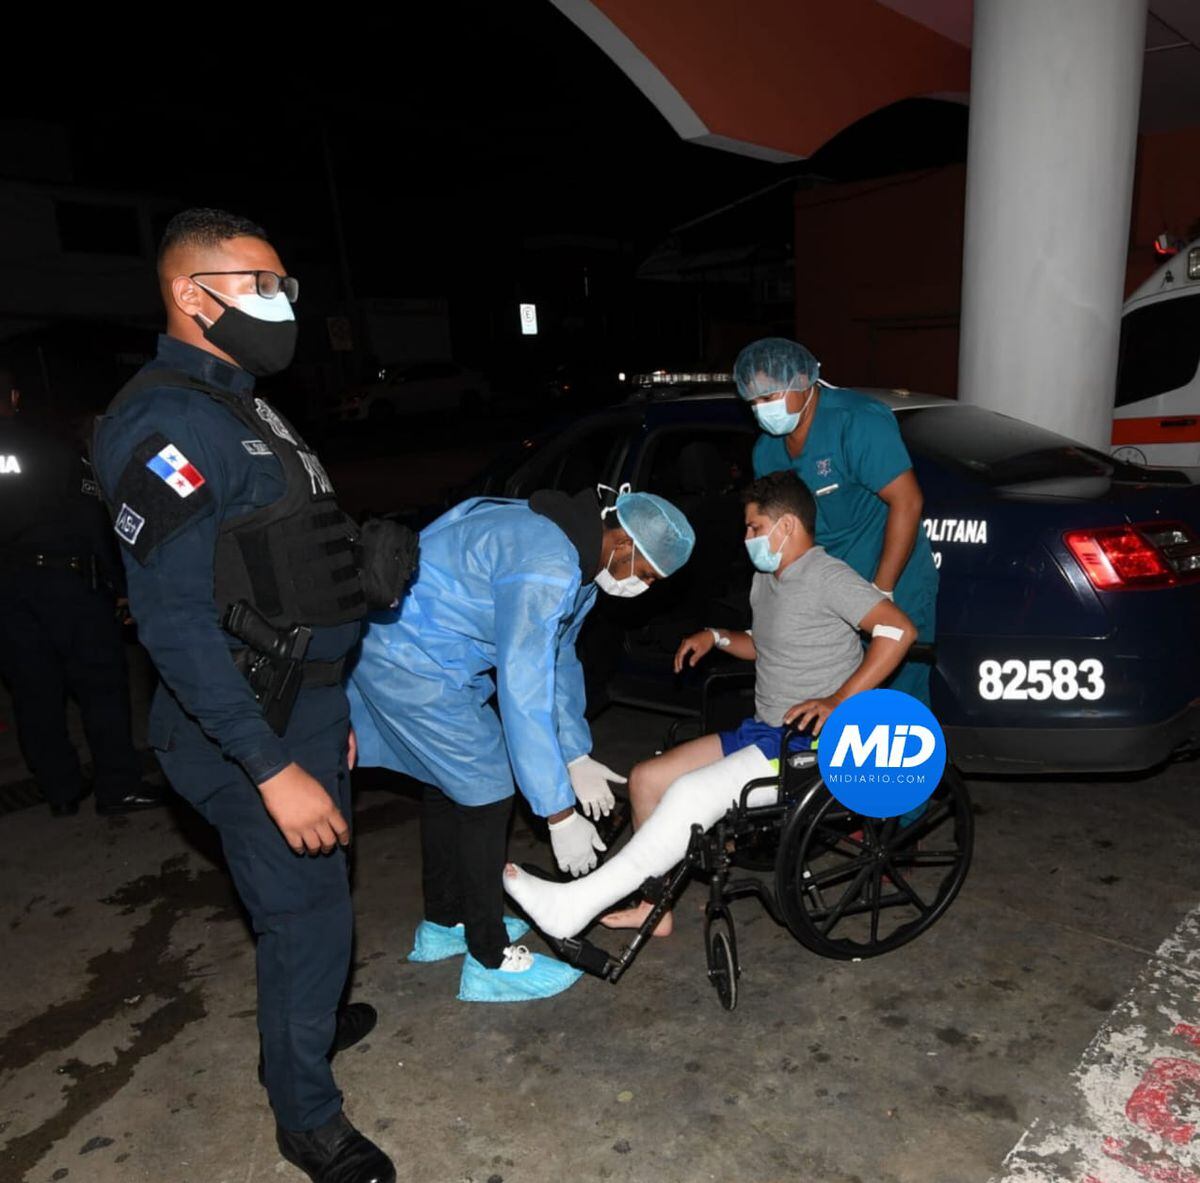 Fue legítima defensa, dice la Policía, sobre motorizado venezolano de Appetito24 que recibió balazo en la pierna. Video